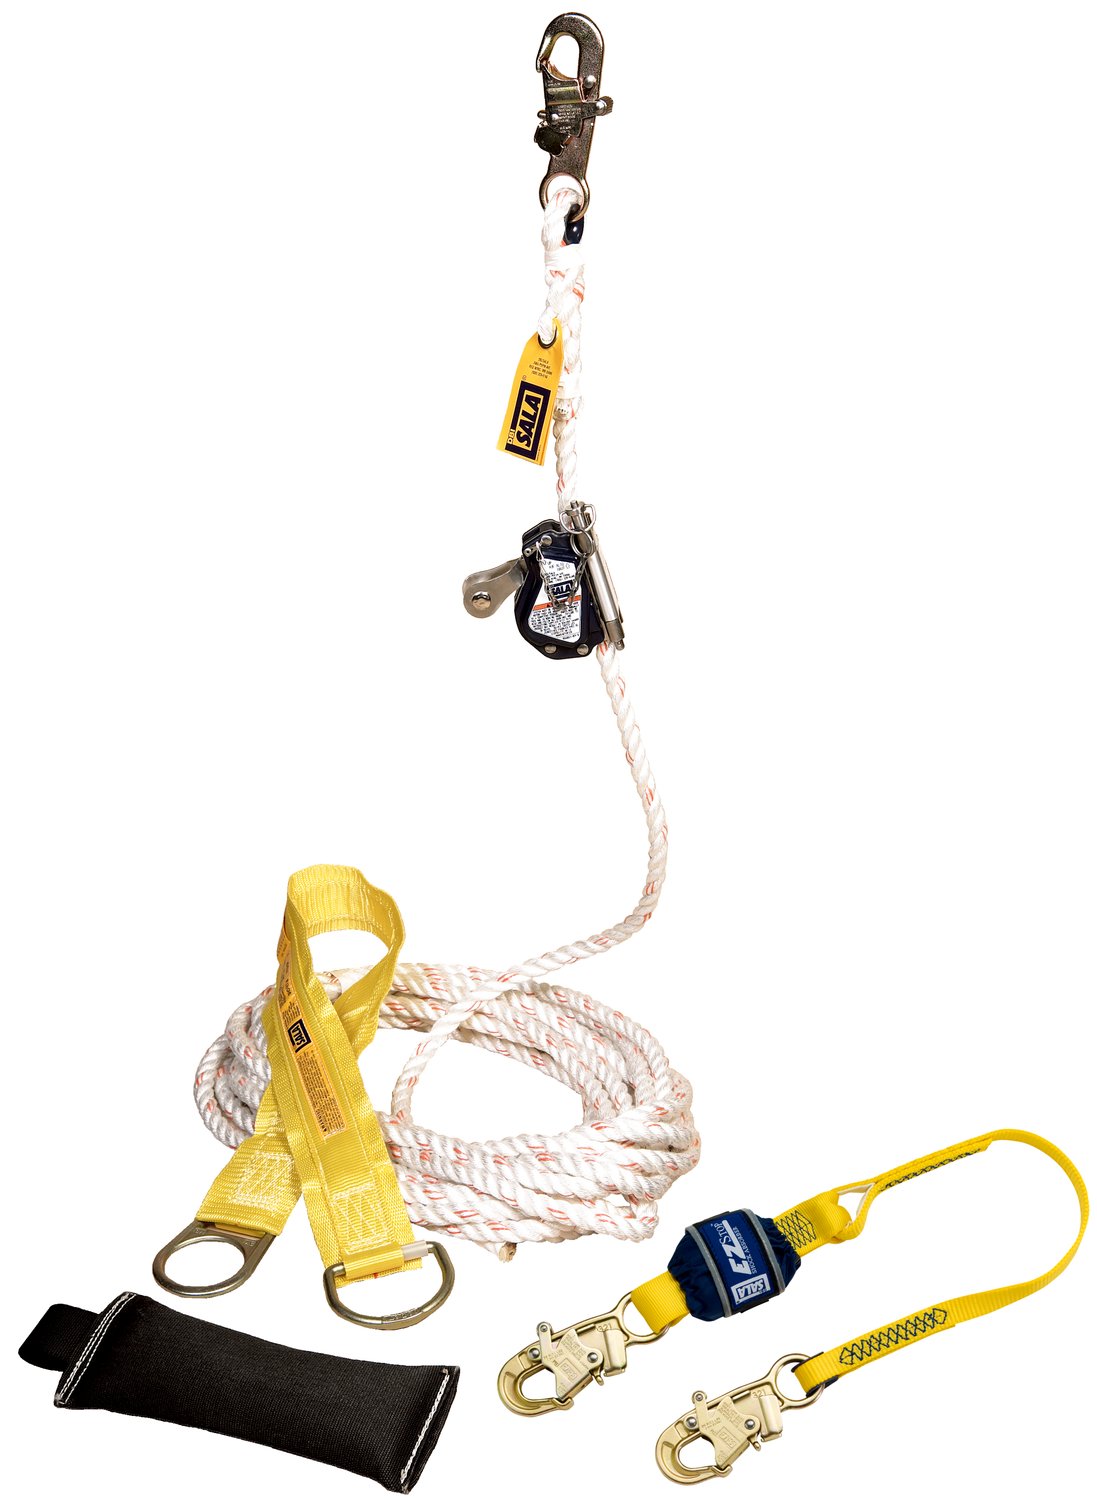 7100305085 - 3M DBI-SALA Lad-Saf Mobile Rope Grab Kit 5009082, Anchor, Rope Grab/Lanyard, Counterweight, Bag, Lifeline, 50 ft